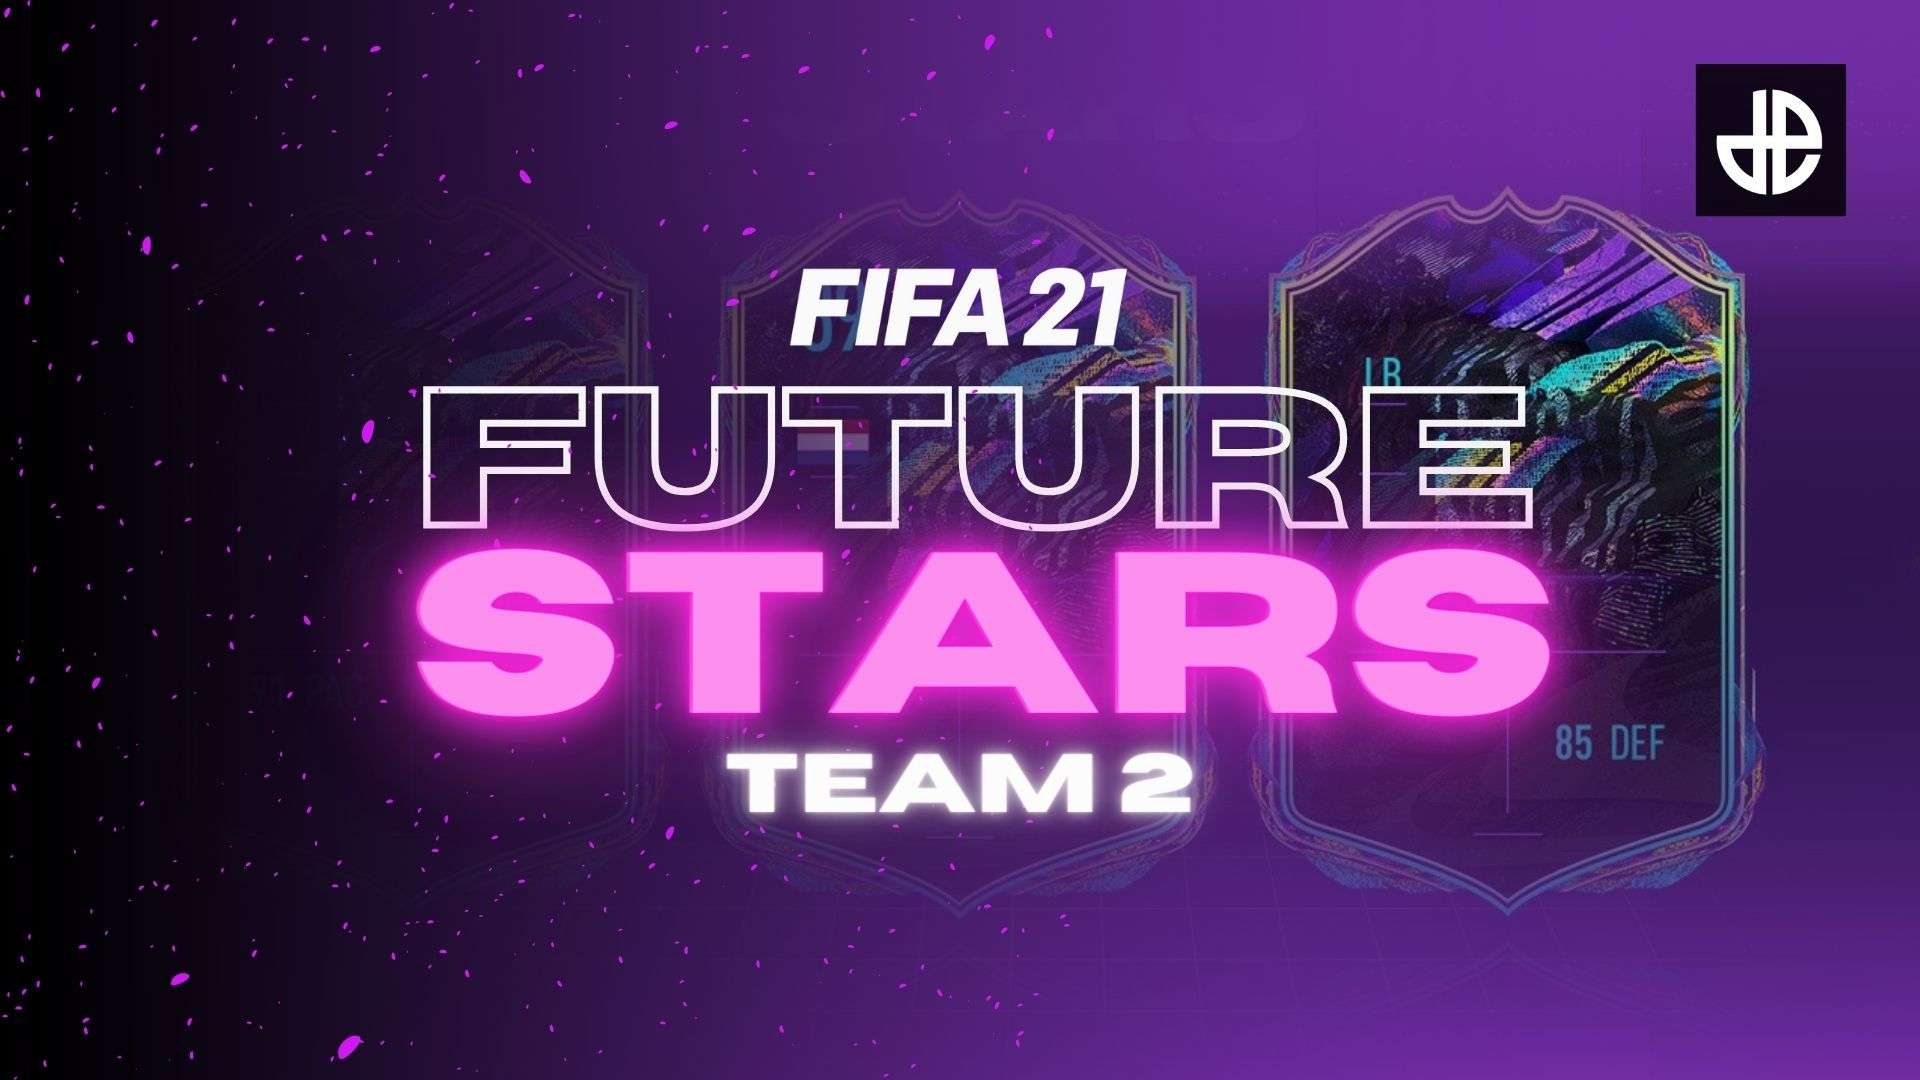 FIFA 21 Future Stars promo Team 2 logo